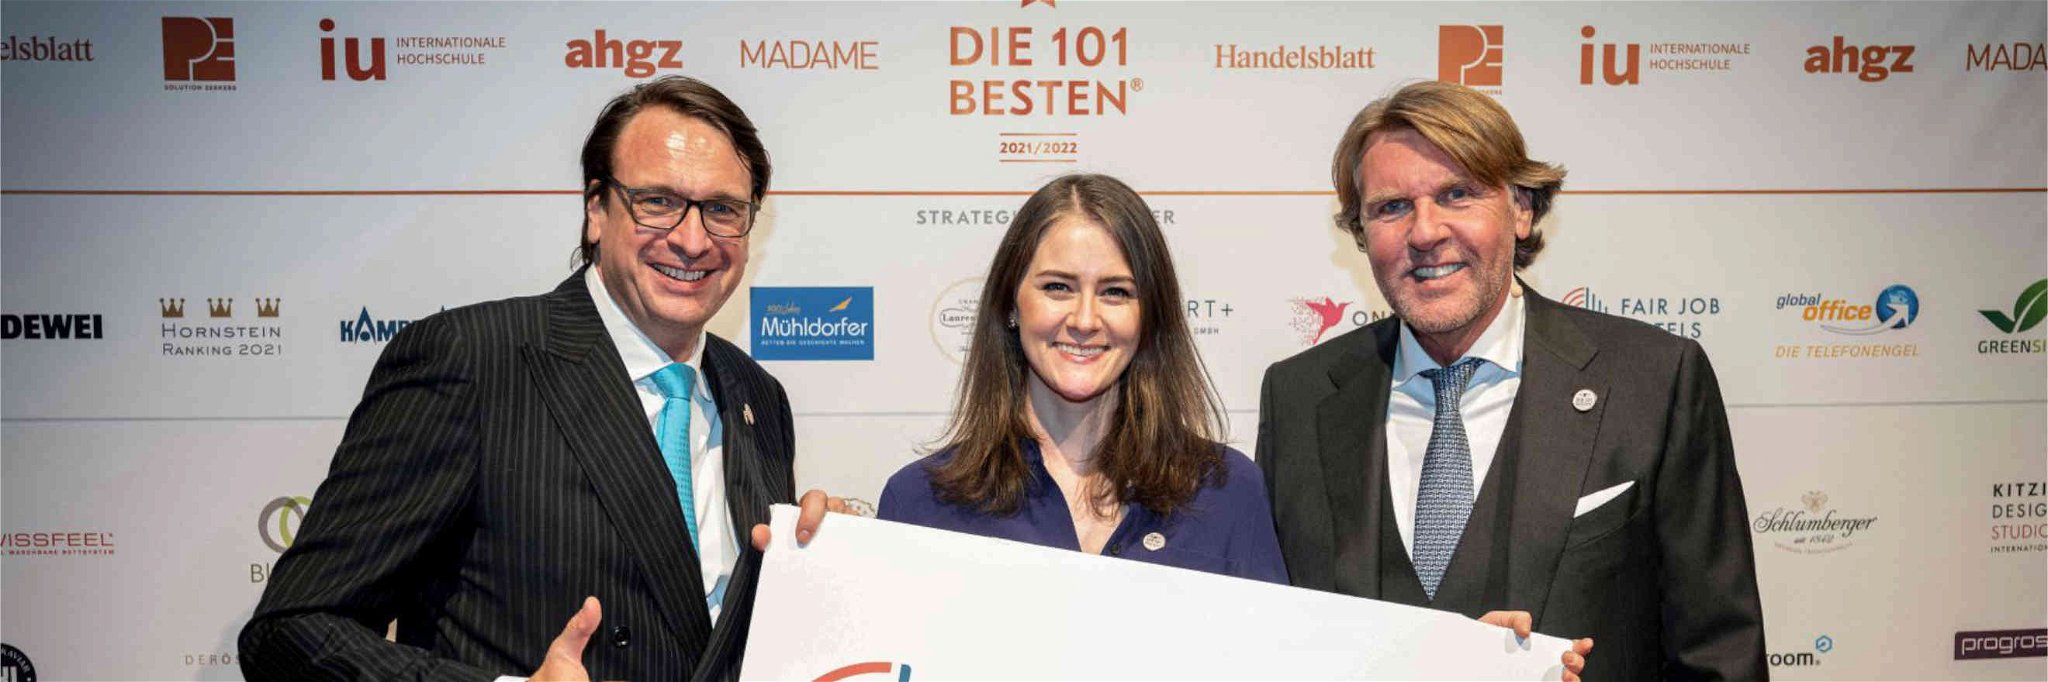 Alexander Aisenbrey, Maria Mittendorfer und Carsten K. Rath freuen sich über die Kooperation zwischen Fair Job Hotels und »Die 101 besten Hotels«.